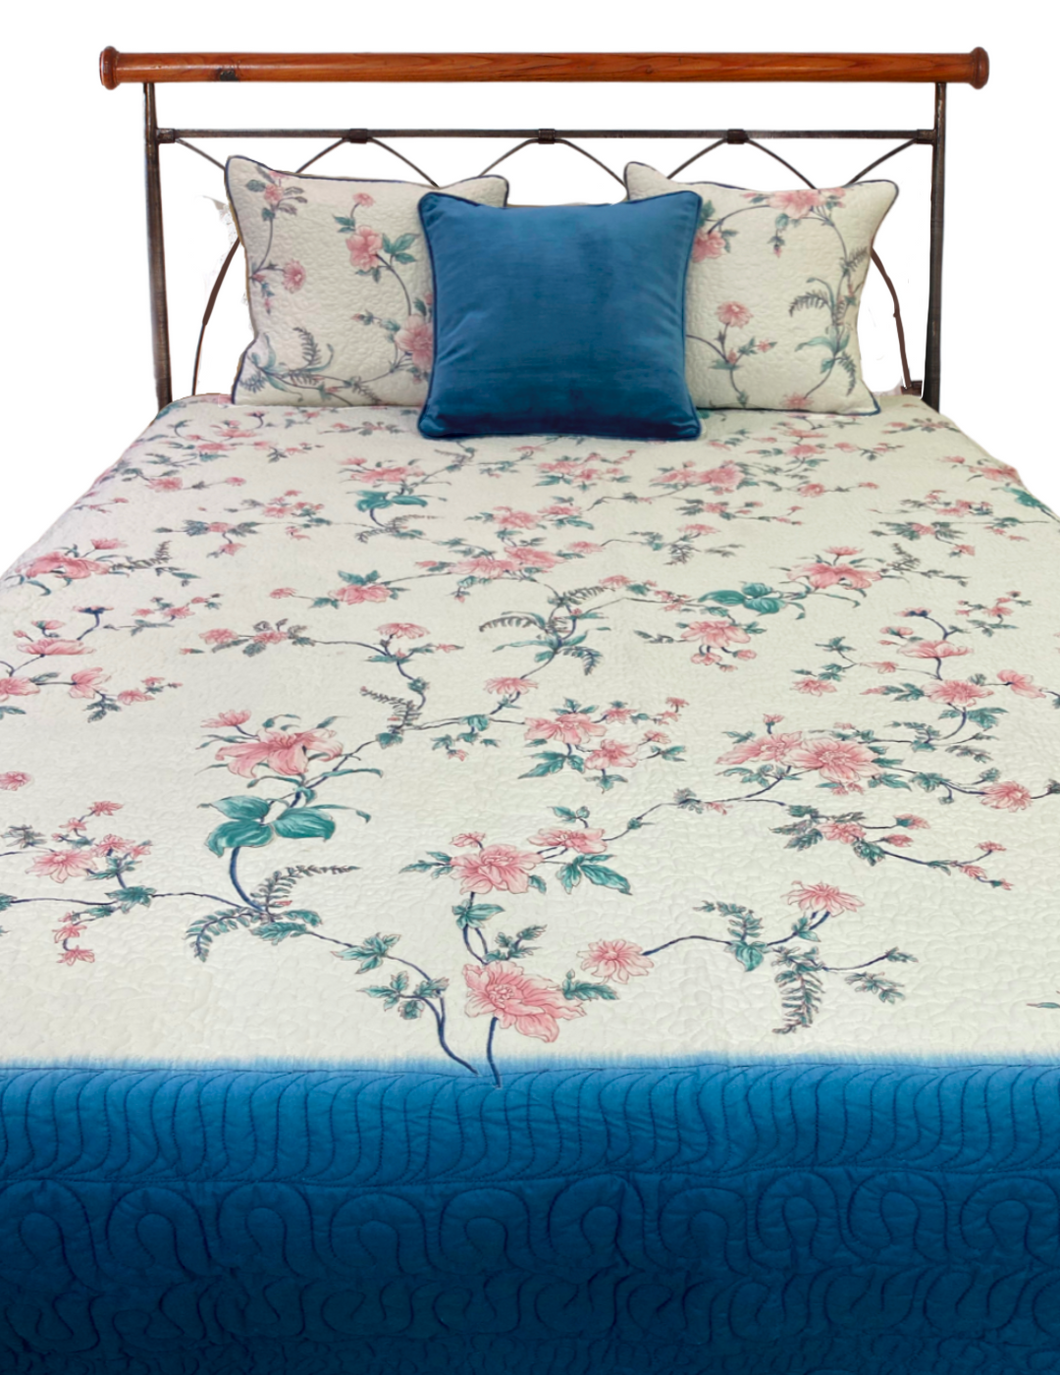 Ferns and Petals Aqua Blue Bed Cover